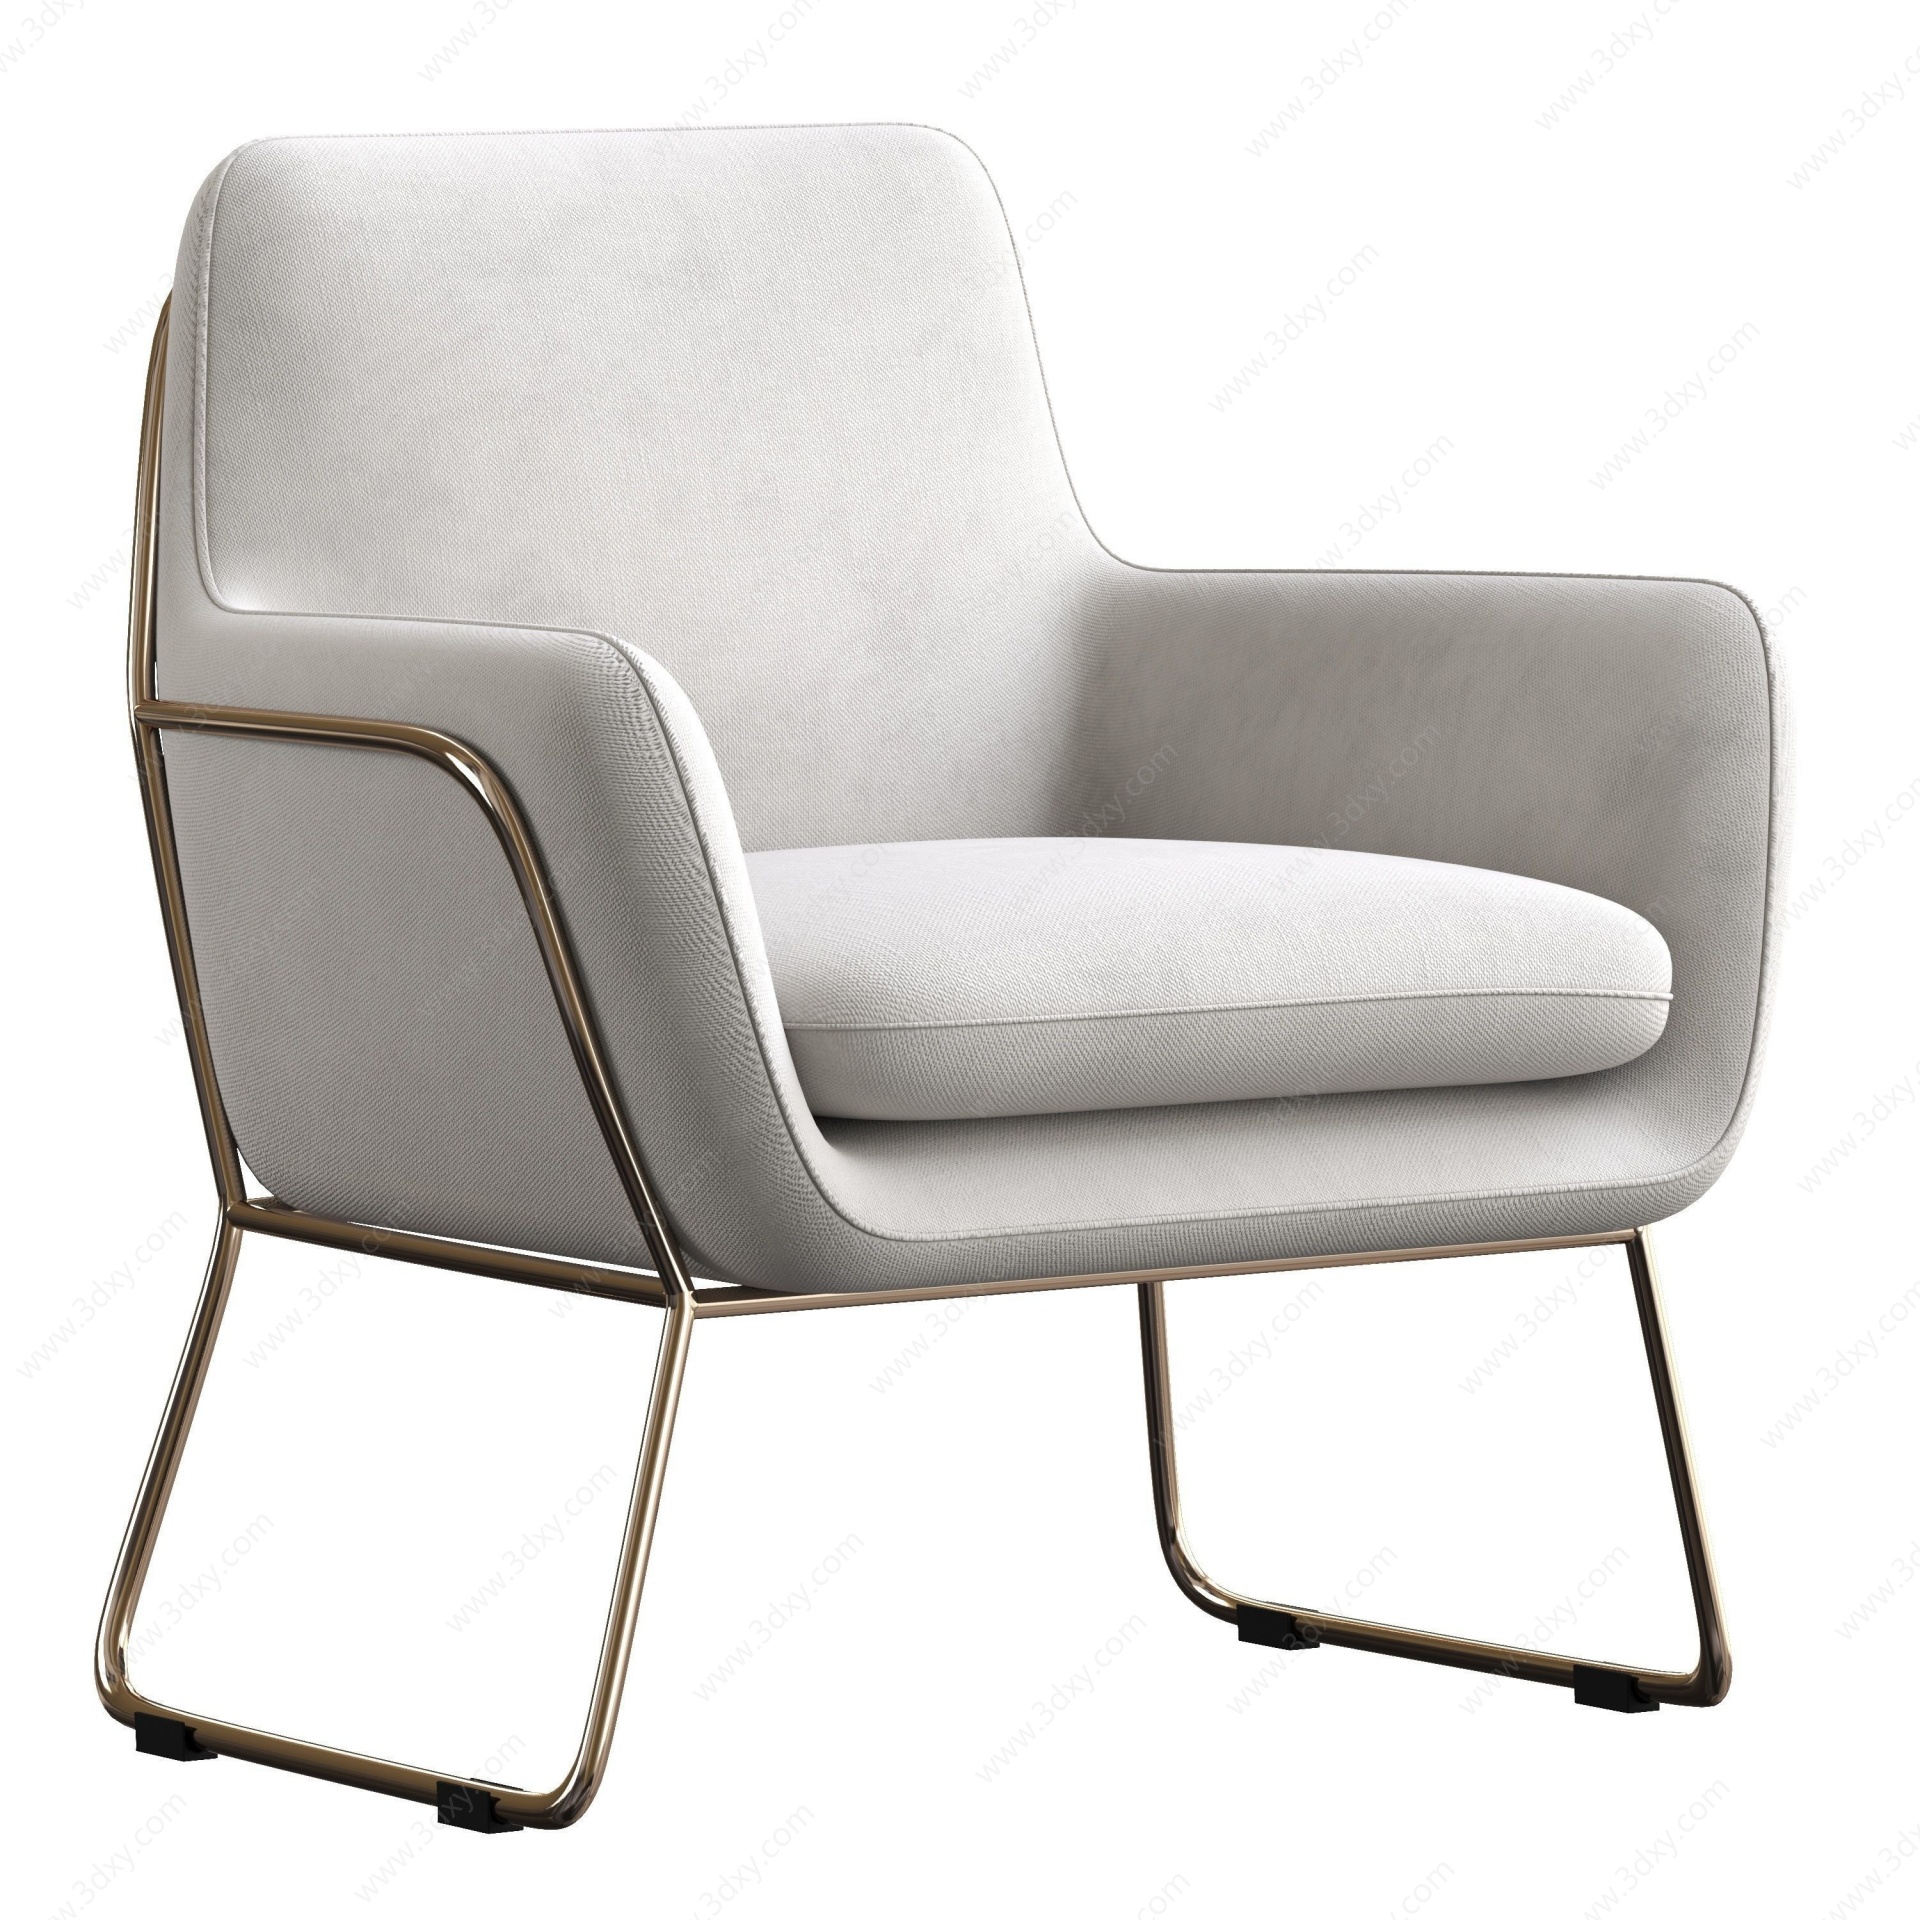 赫尔曼扶手椅布面座椅3D模型